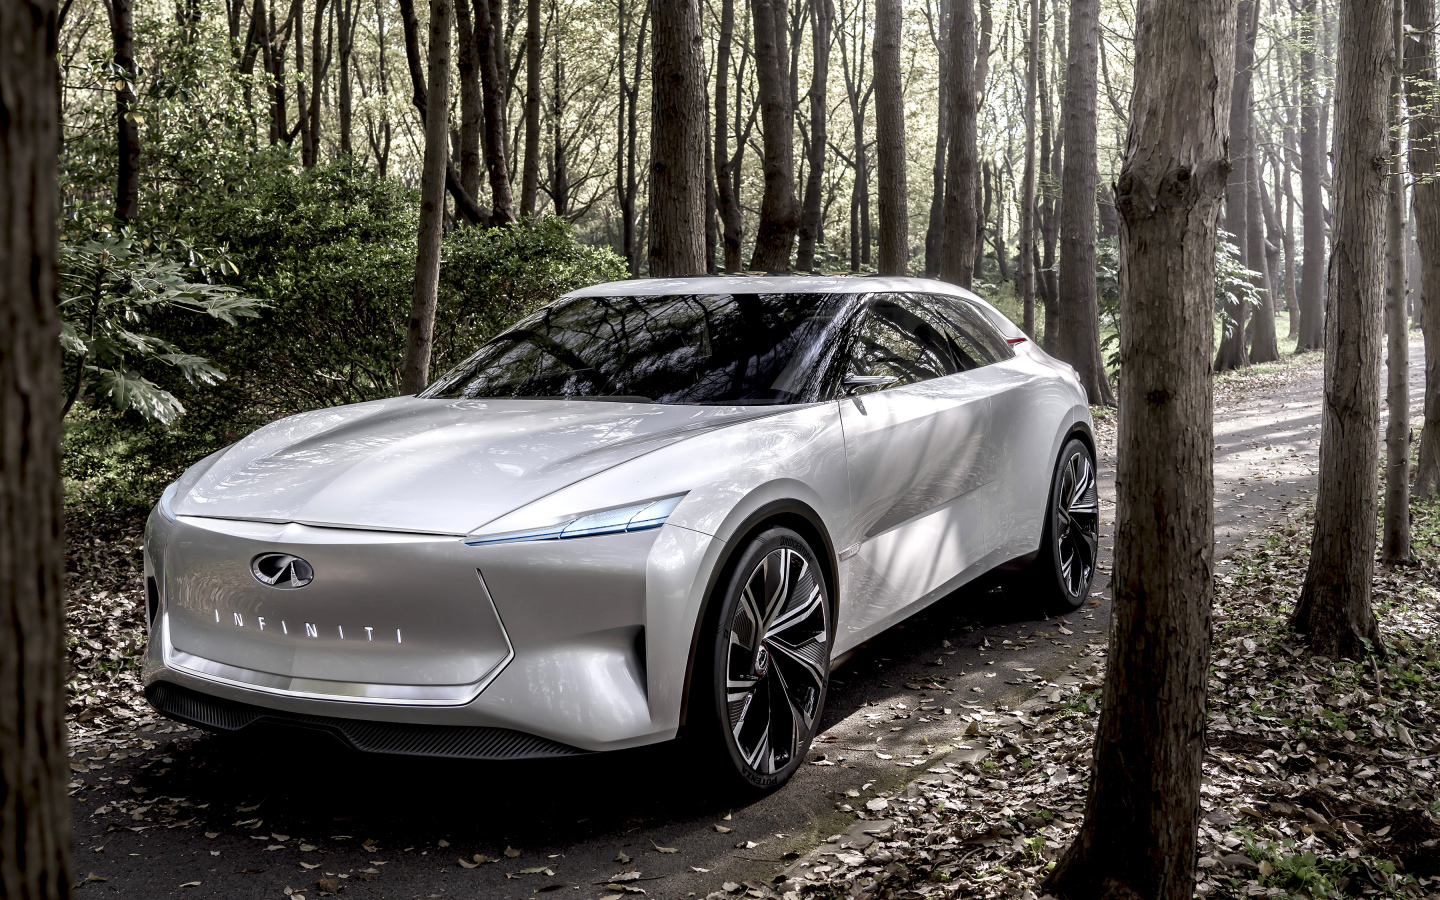 Серебристый автомобиль Infiniti Qs Inspiration 2019 года в лесу